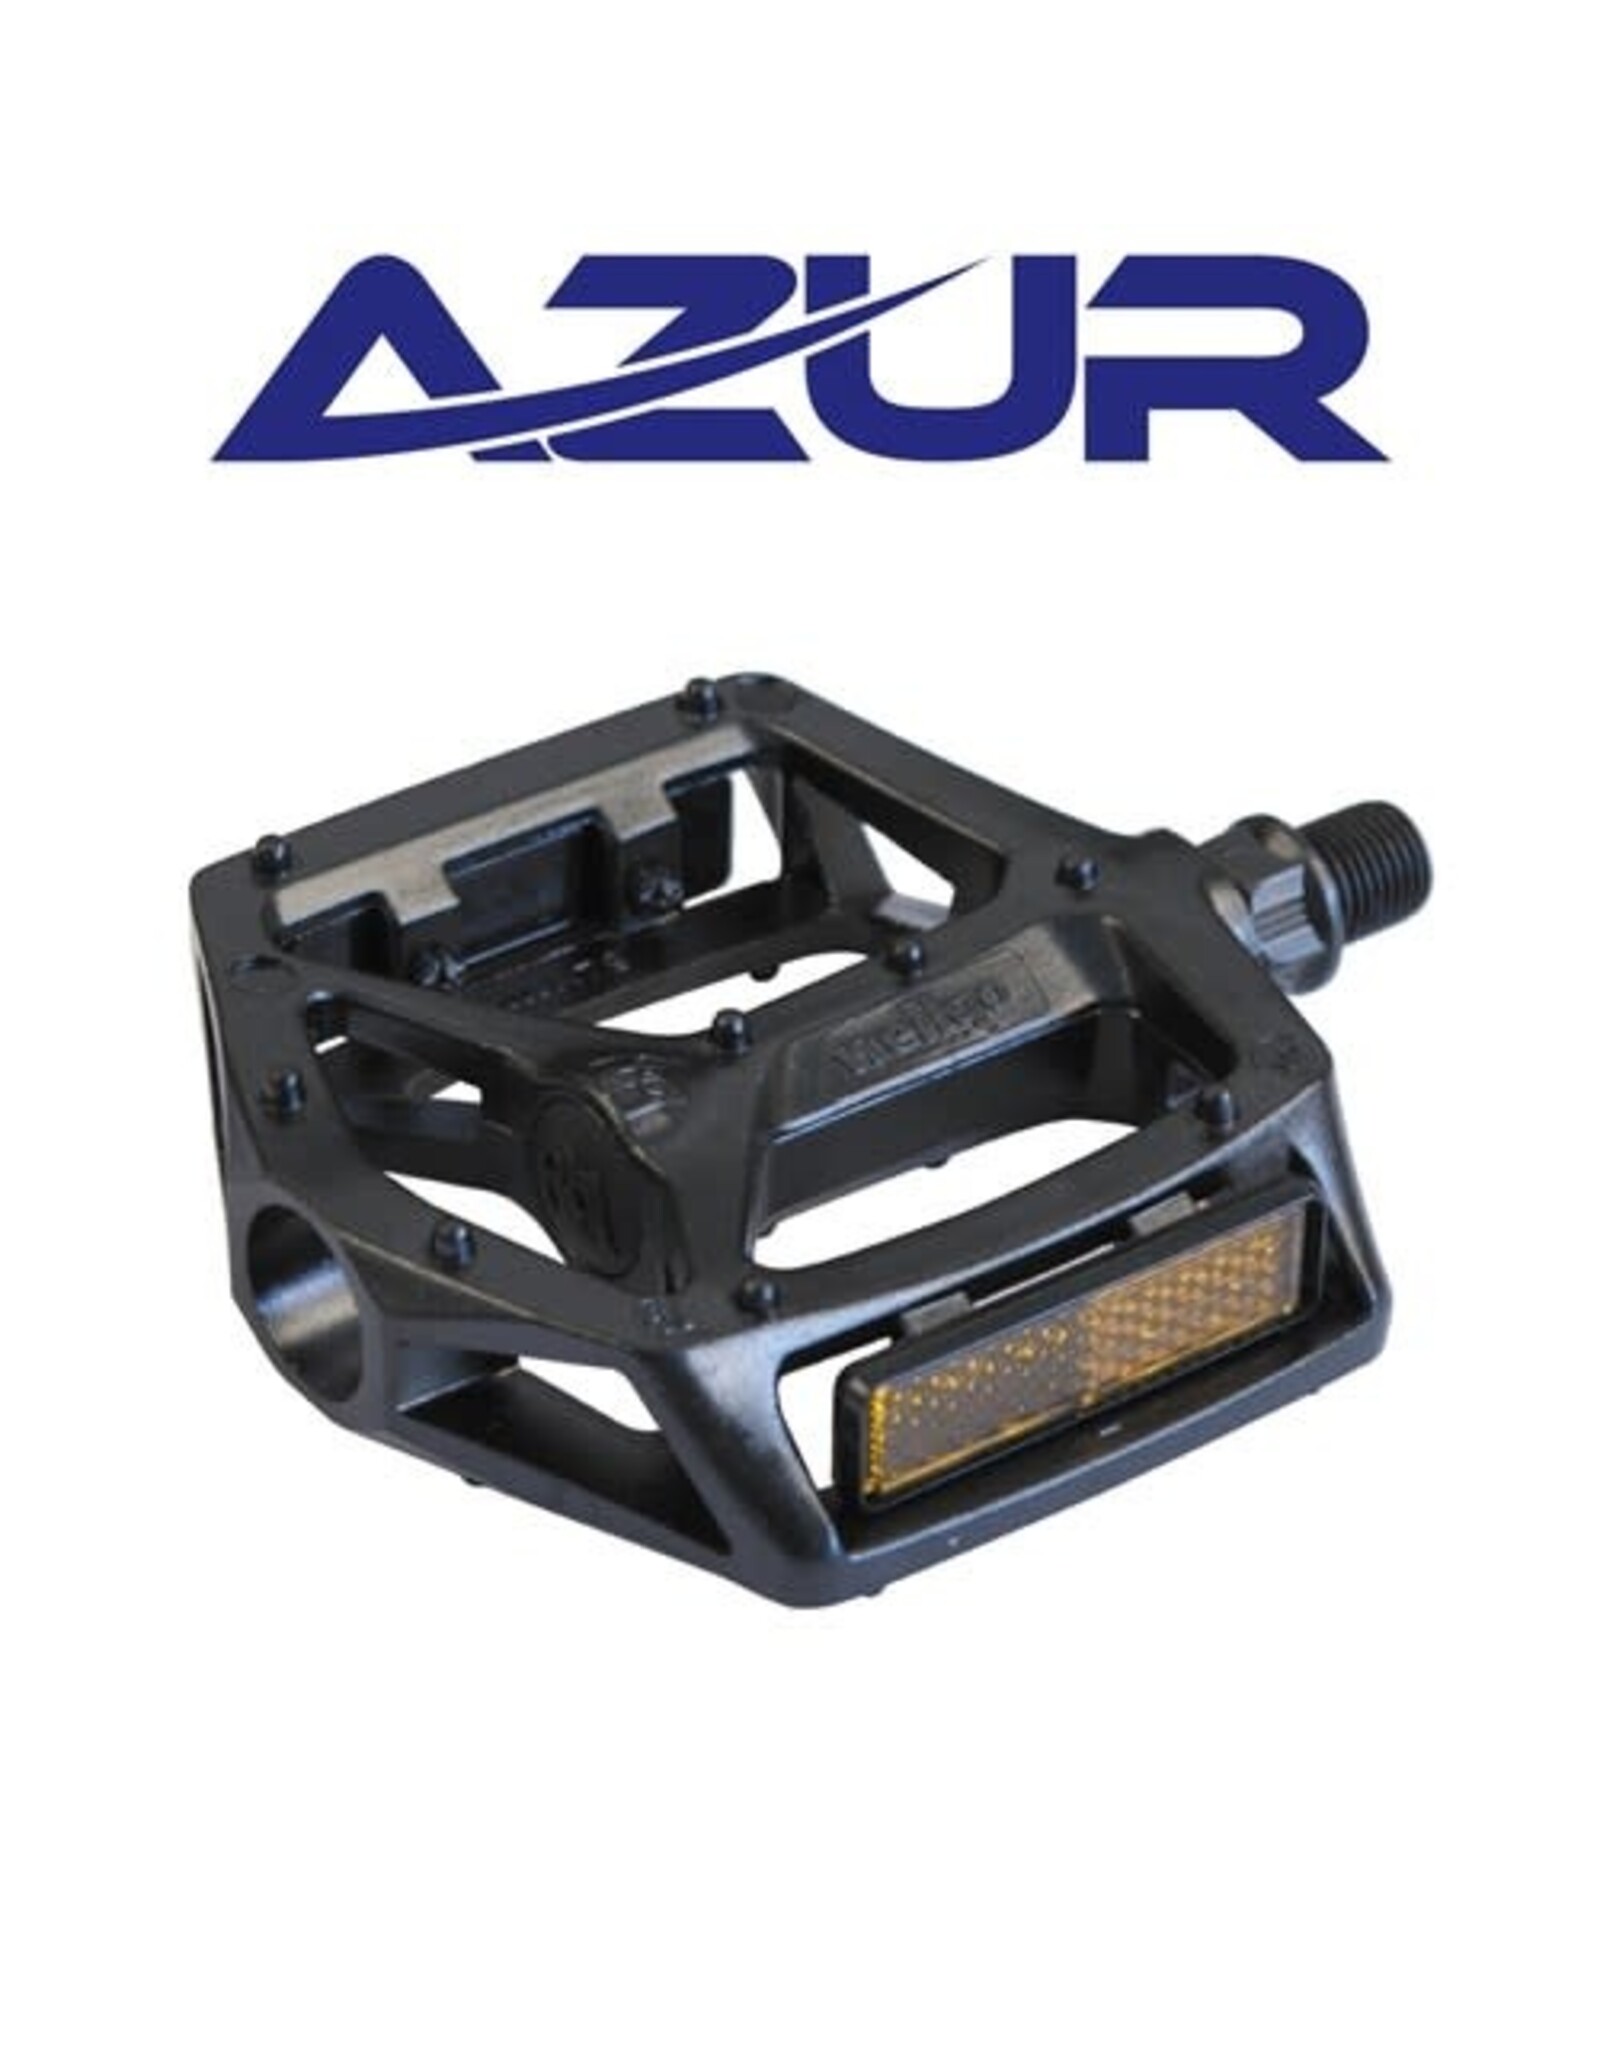 AZUR AZUR PEDALS RAIL BMX ALLOY 1/2” BLACK PLATFORM